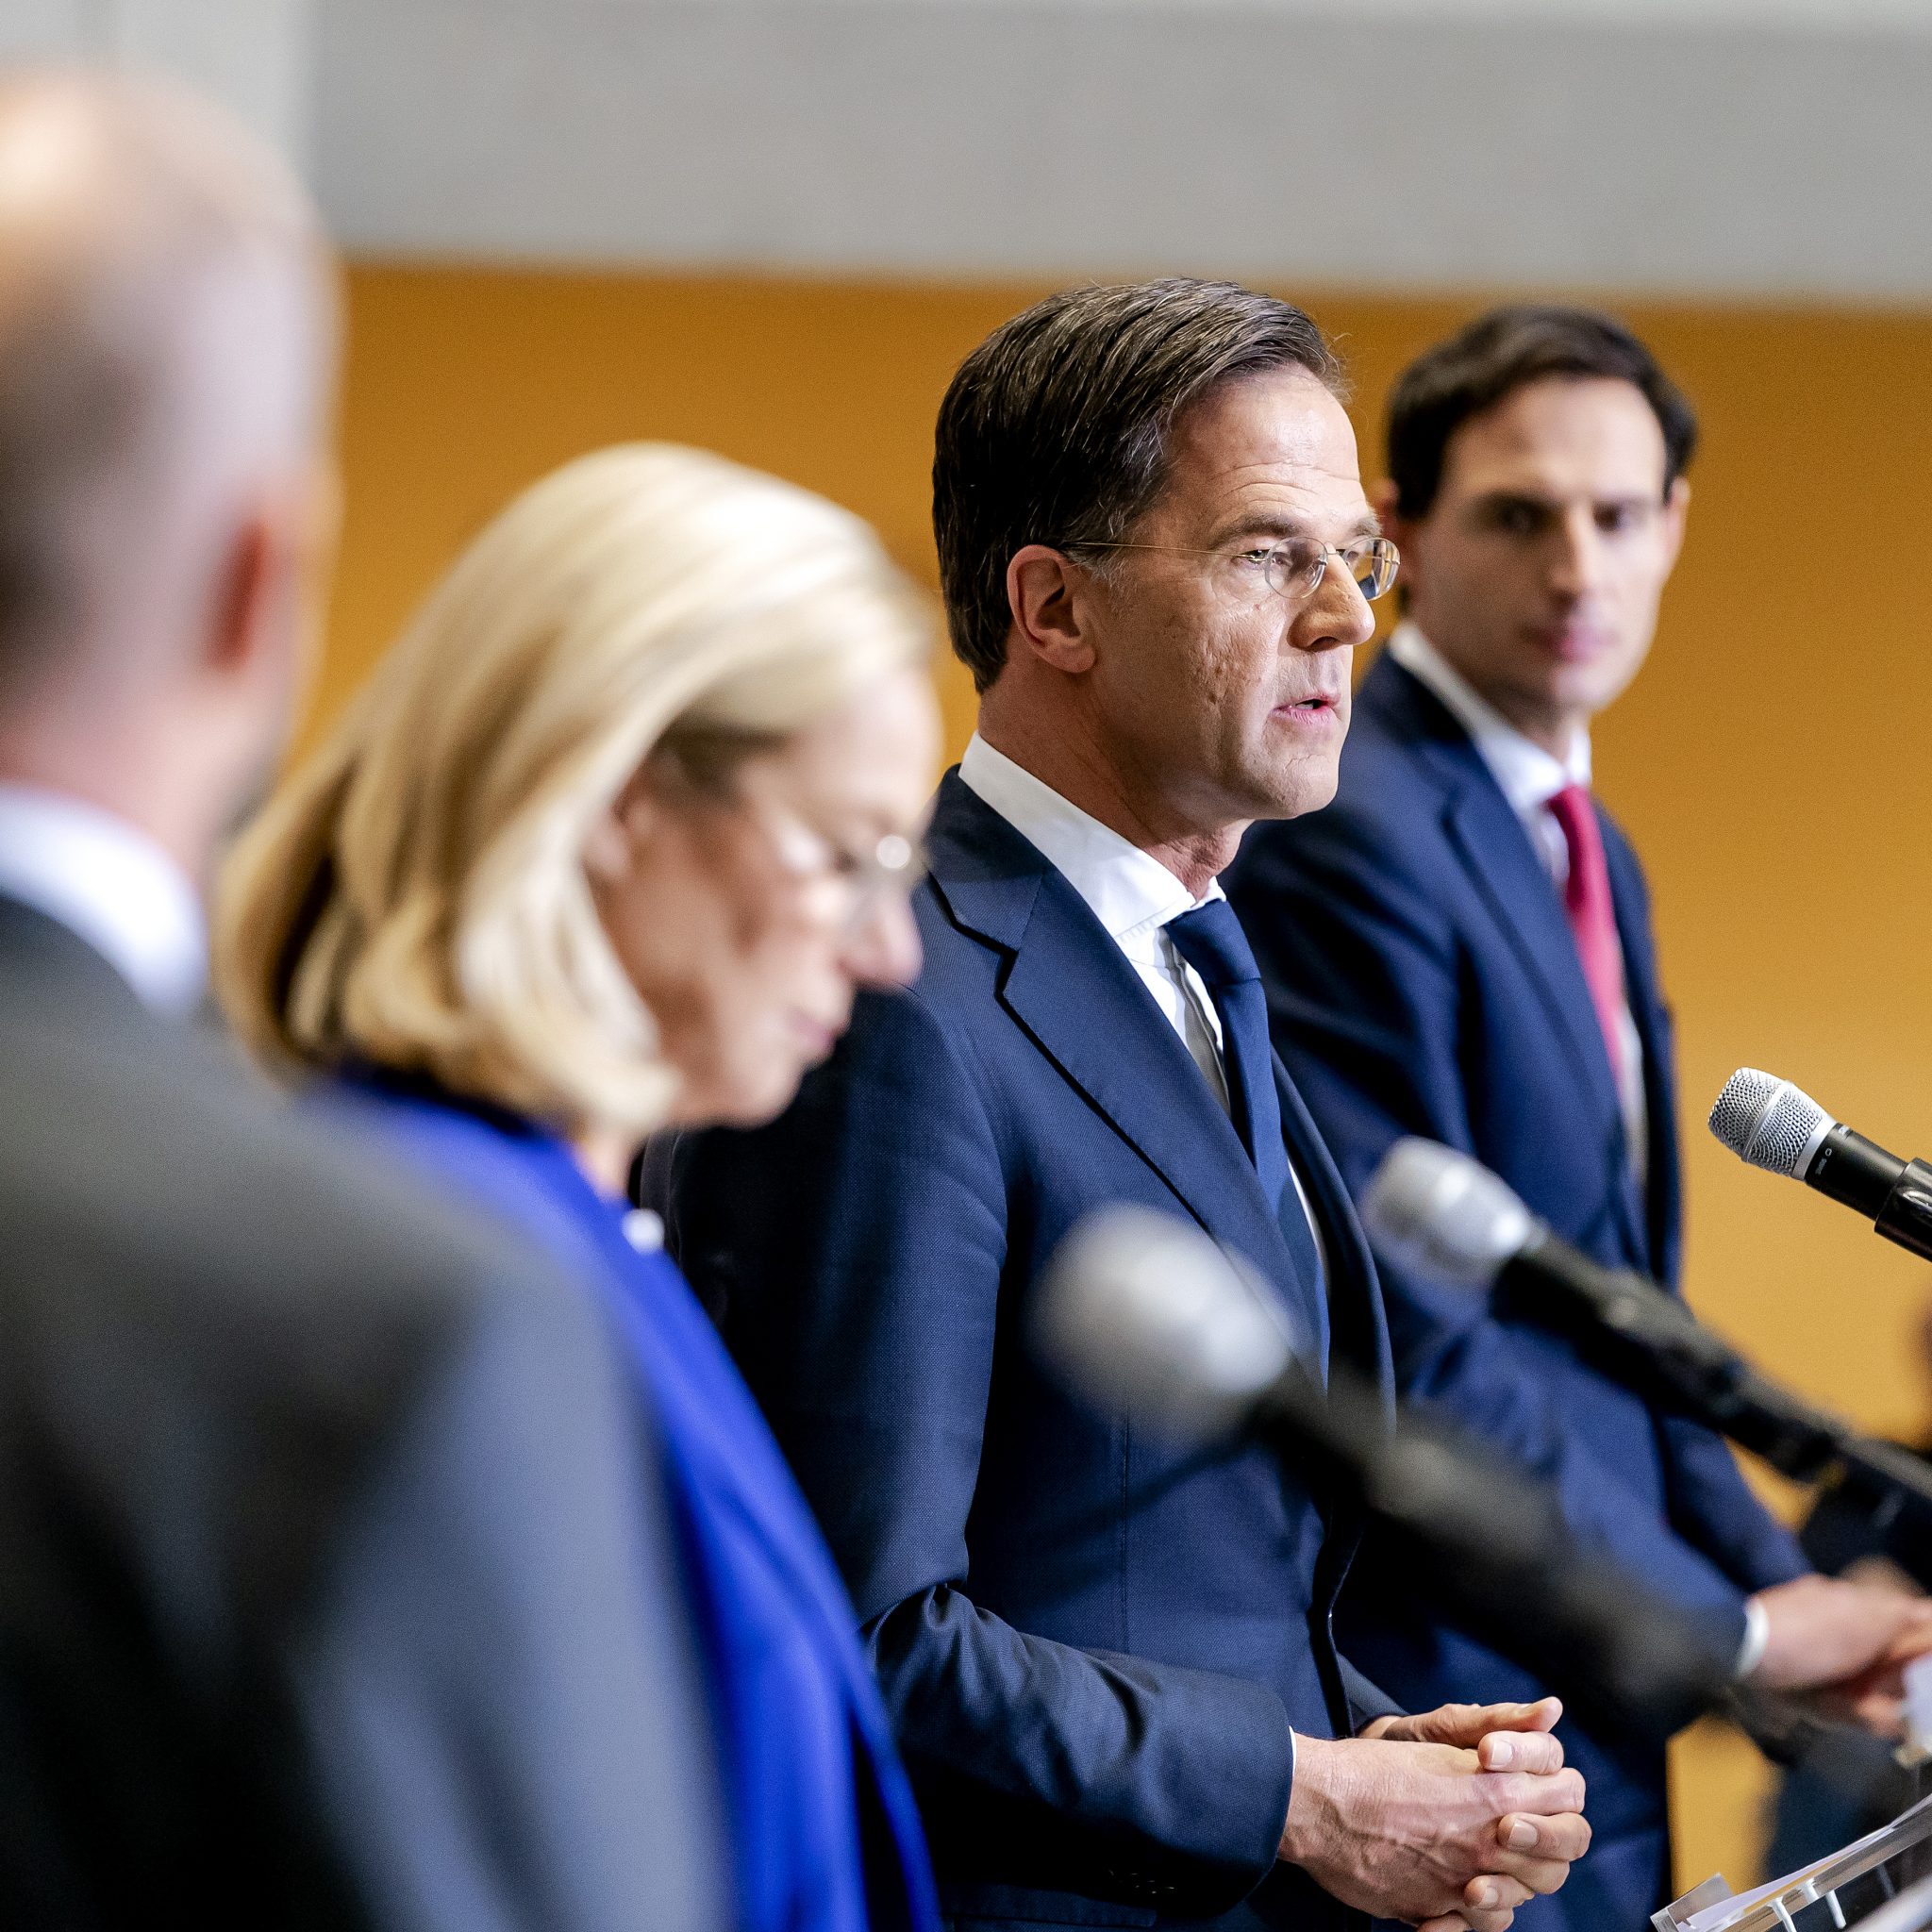 v.l.n.r. Gert-Jan Segers (CU), Sigrid Kaag (D66), Mark Rutte (VVD) en Wopke Hoekstra (CDA) tijdens de presentatie van het regeerakkoord. (Foto ANP)